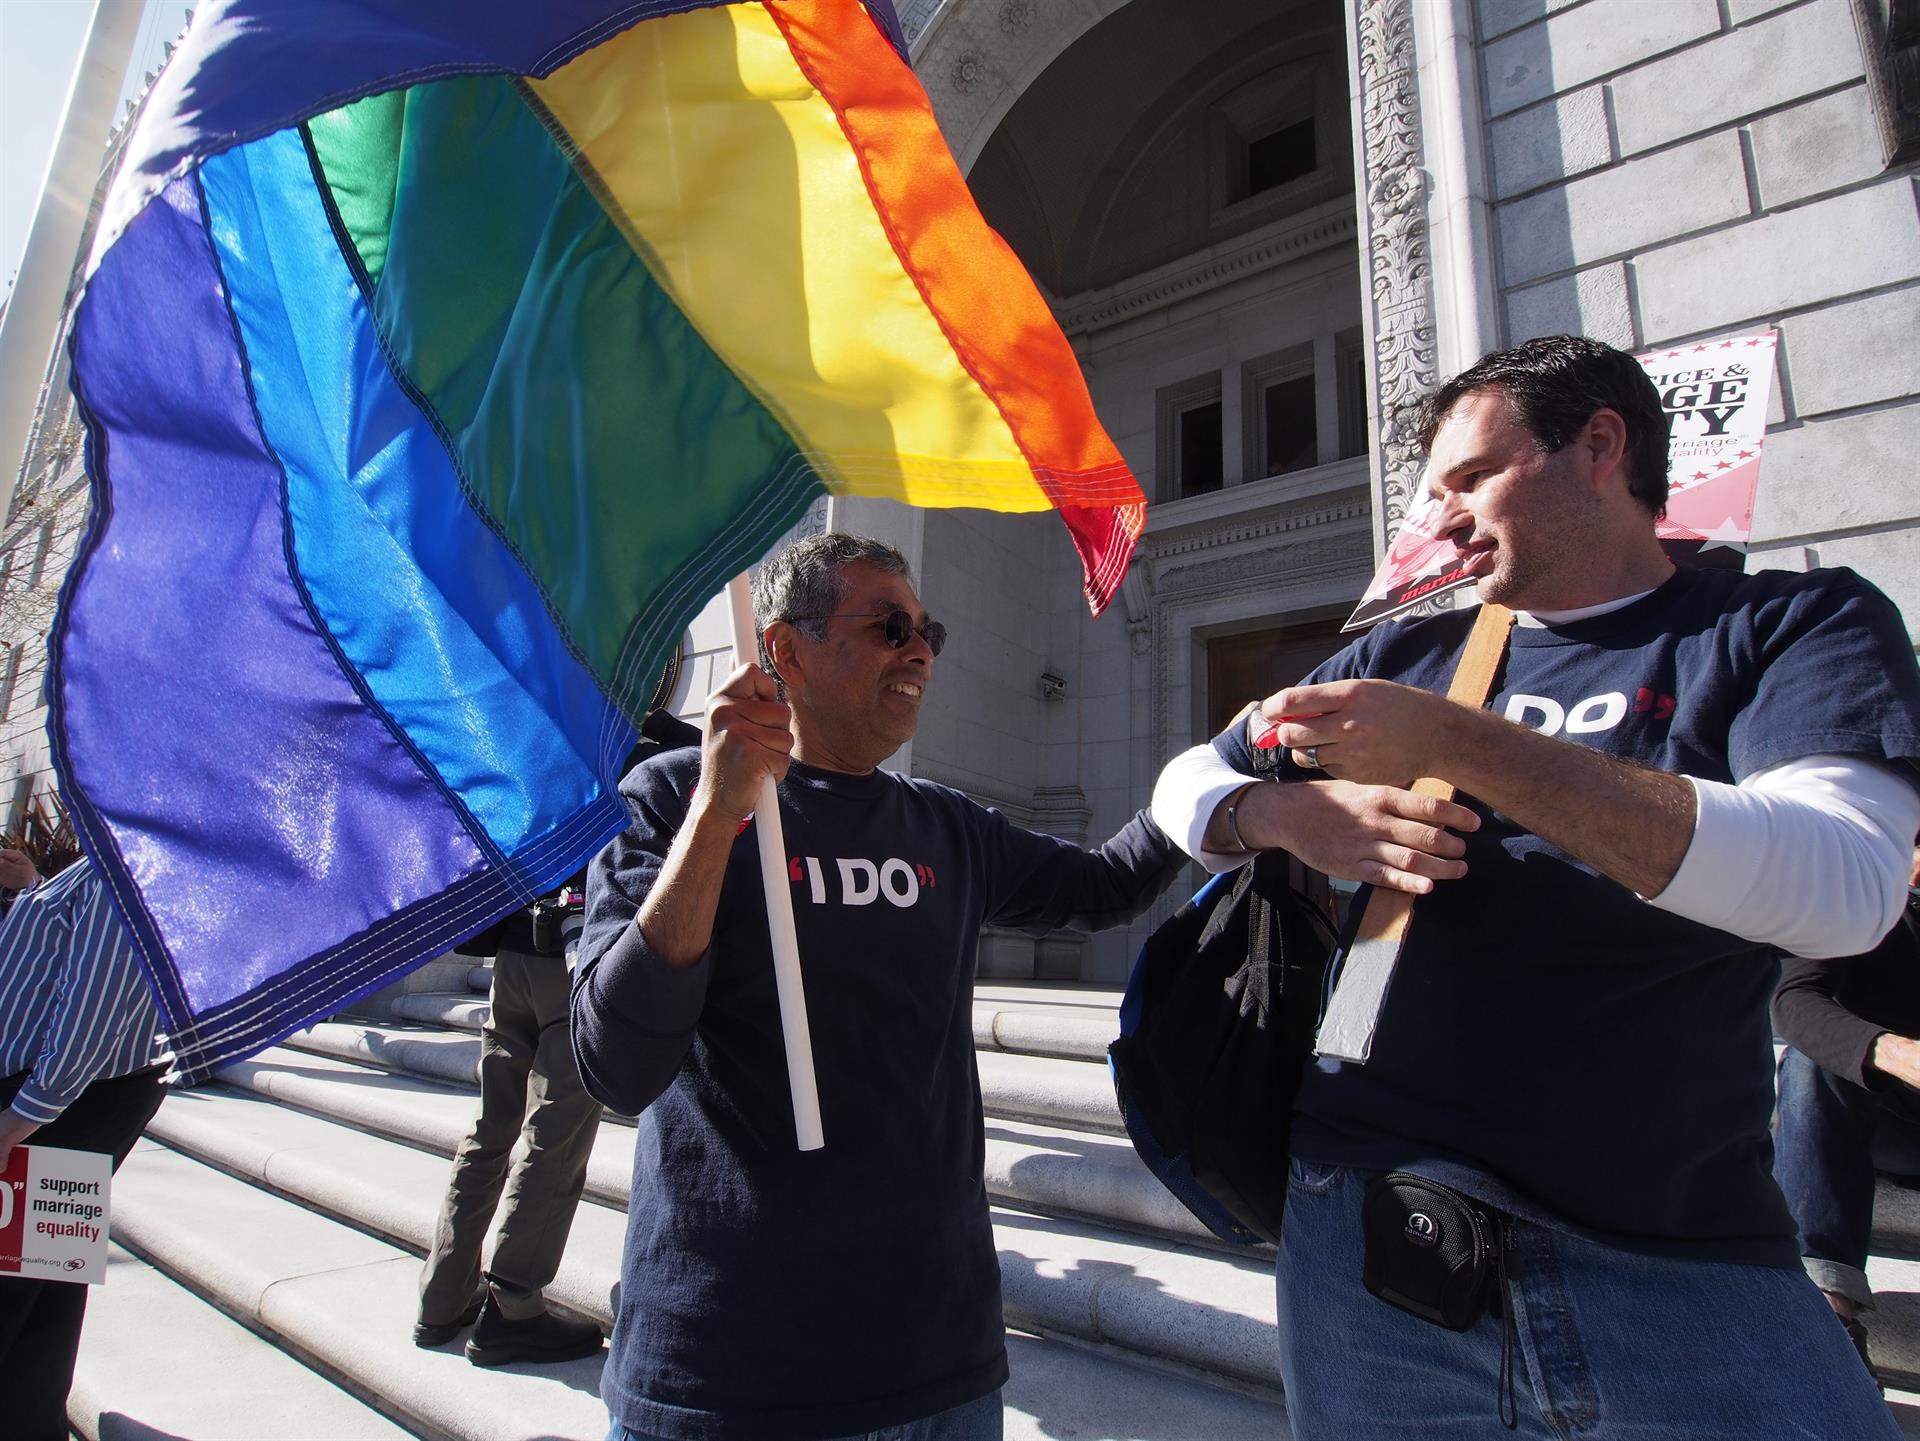 Vista de varias personas de la comunidad gay durante una manifestación, imagen de archivo. EFE/JOHN G. MABANGLO
